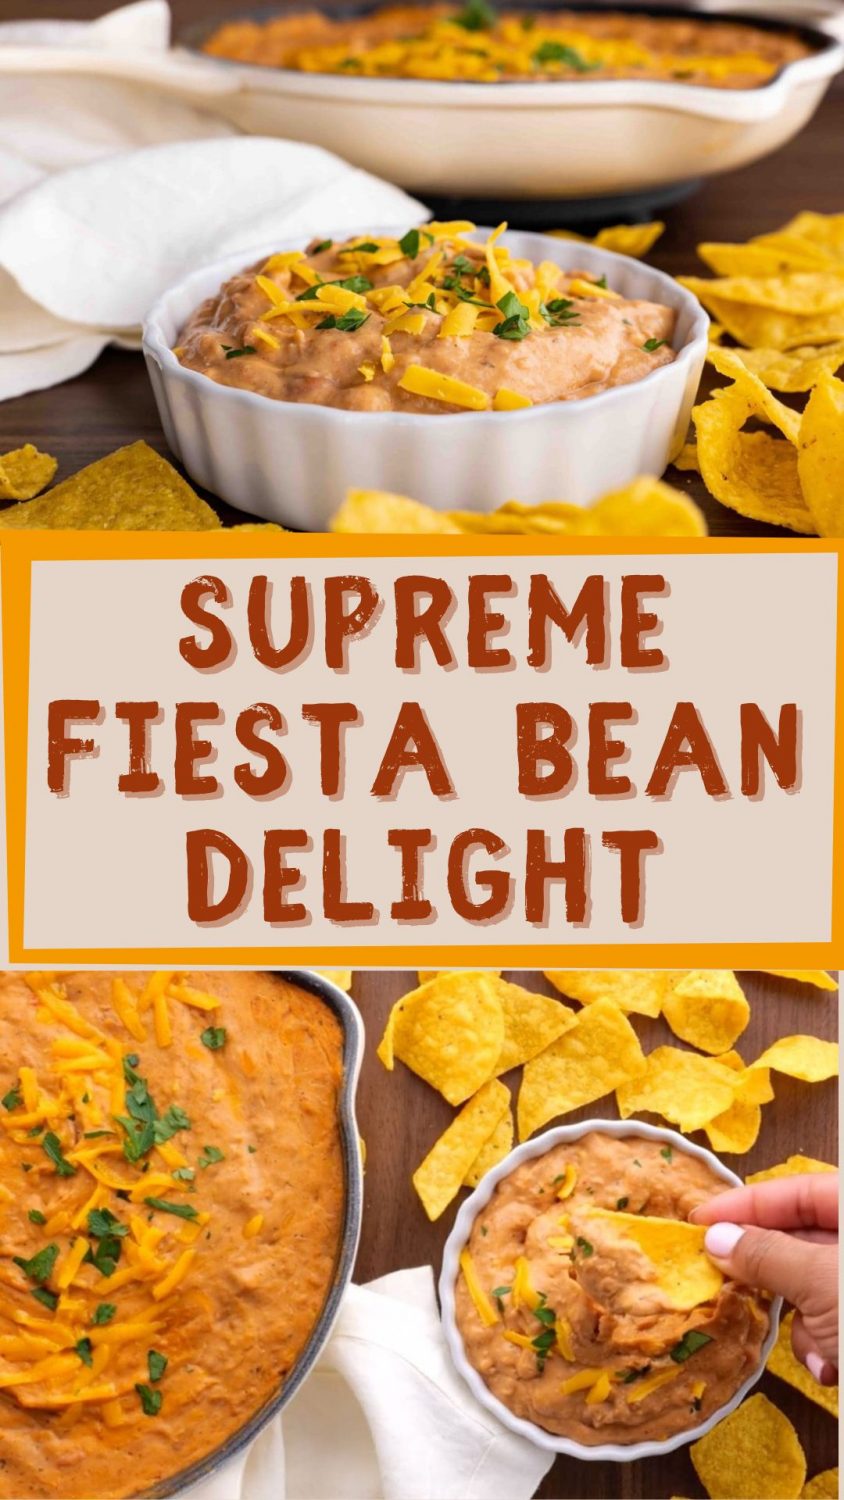 Supreme Fiesta Bean Delight